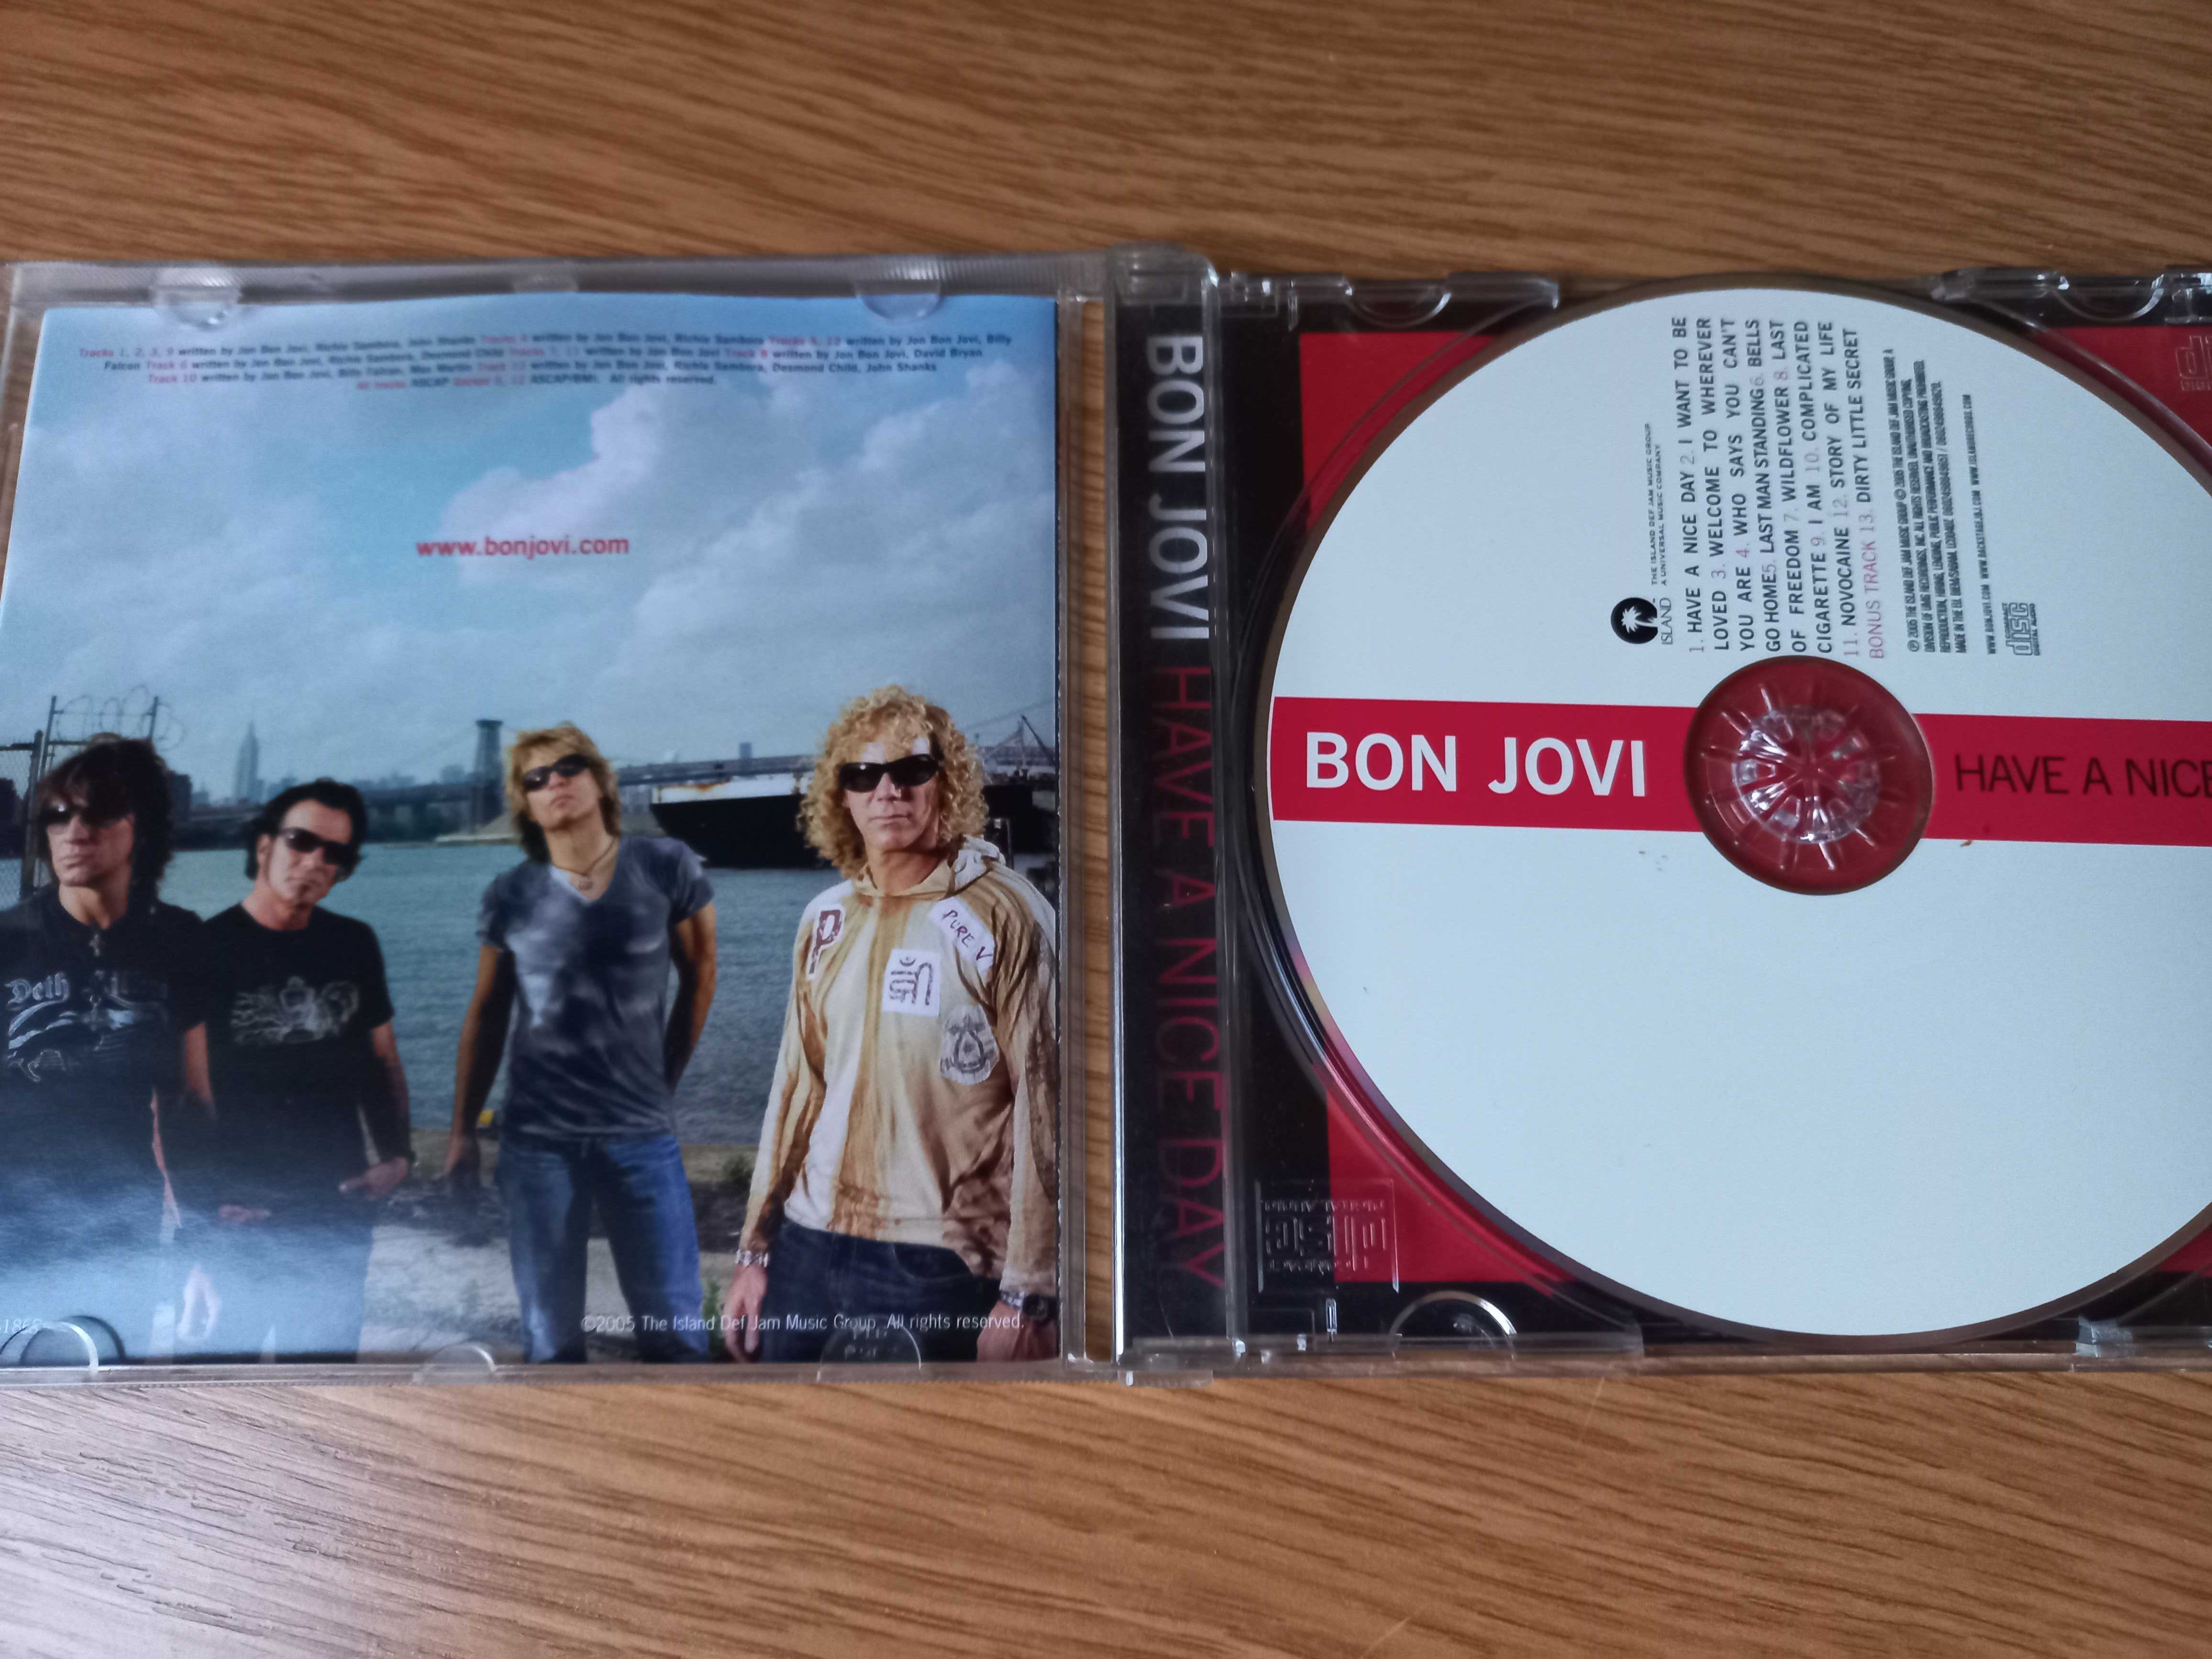 !! przy zakupie 2 płyta CD za 5 zł !! - Bon Jovi, Have nice day